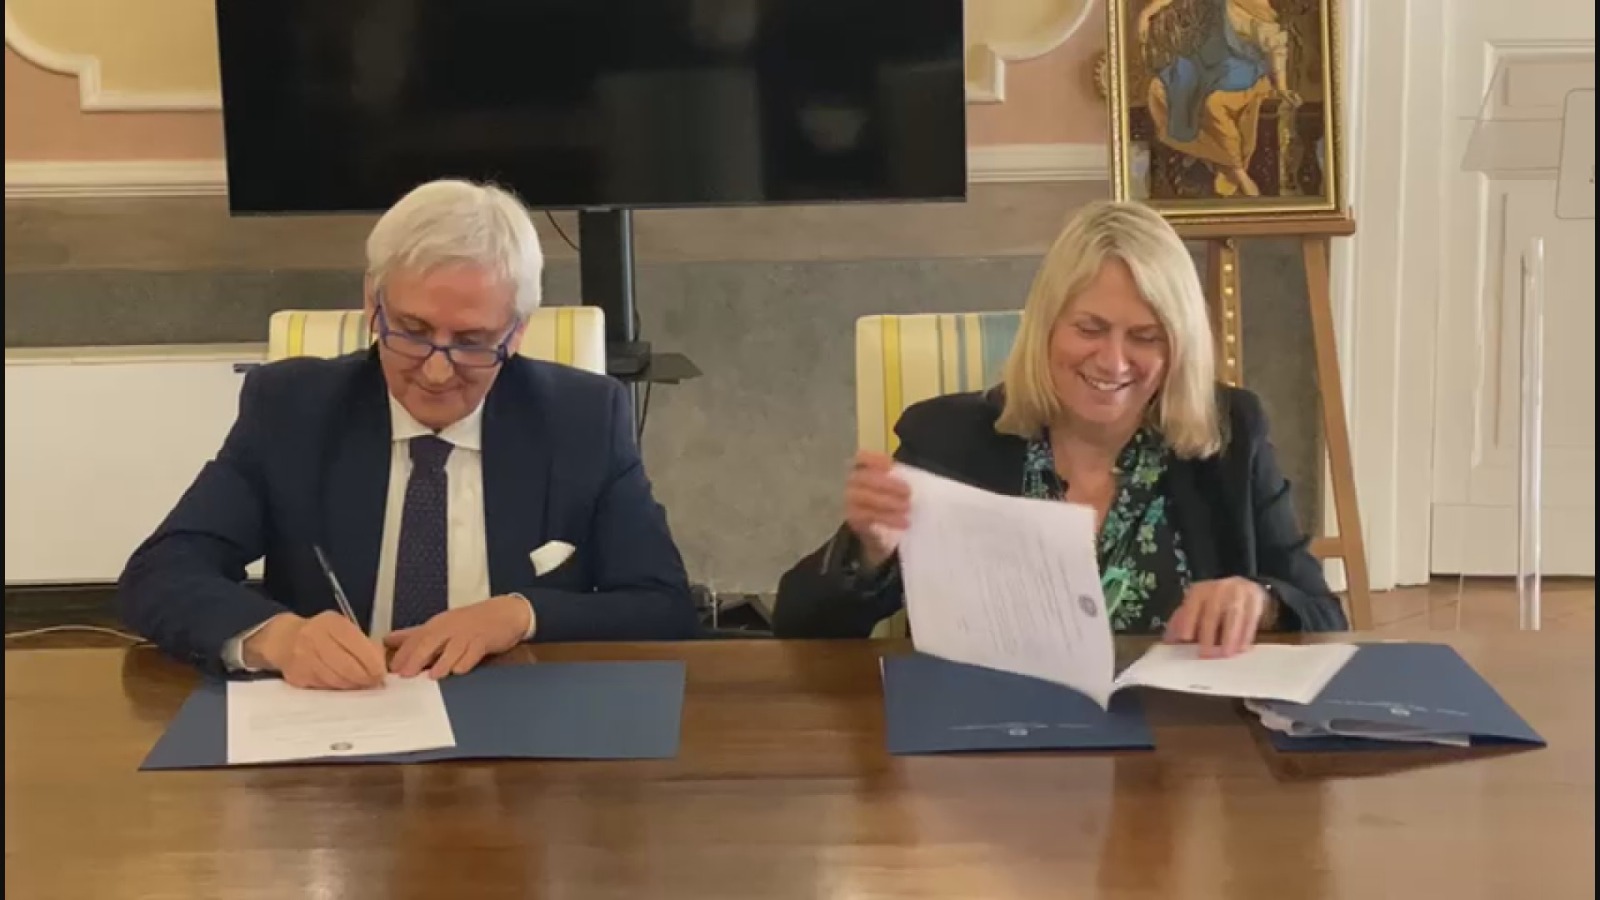 Avellino| Pnrr, firmato l’accordo tra prefetto e direttore della Ragioneria territoriale sul Presidio unitario